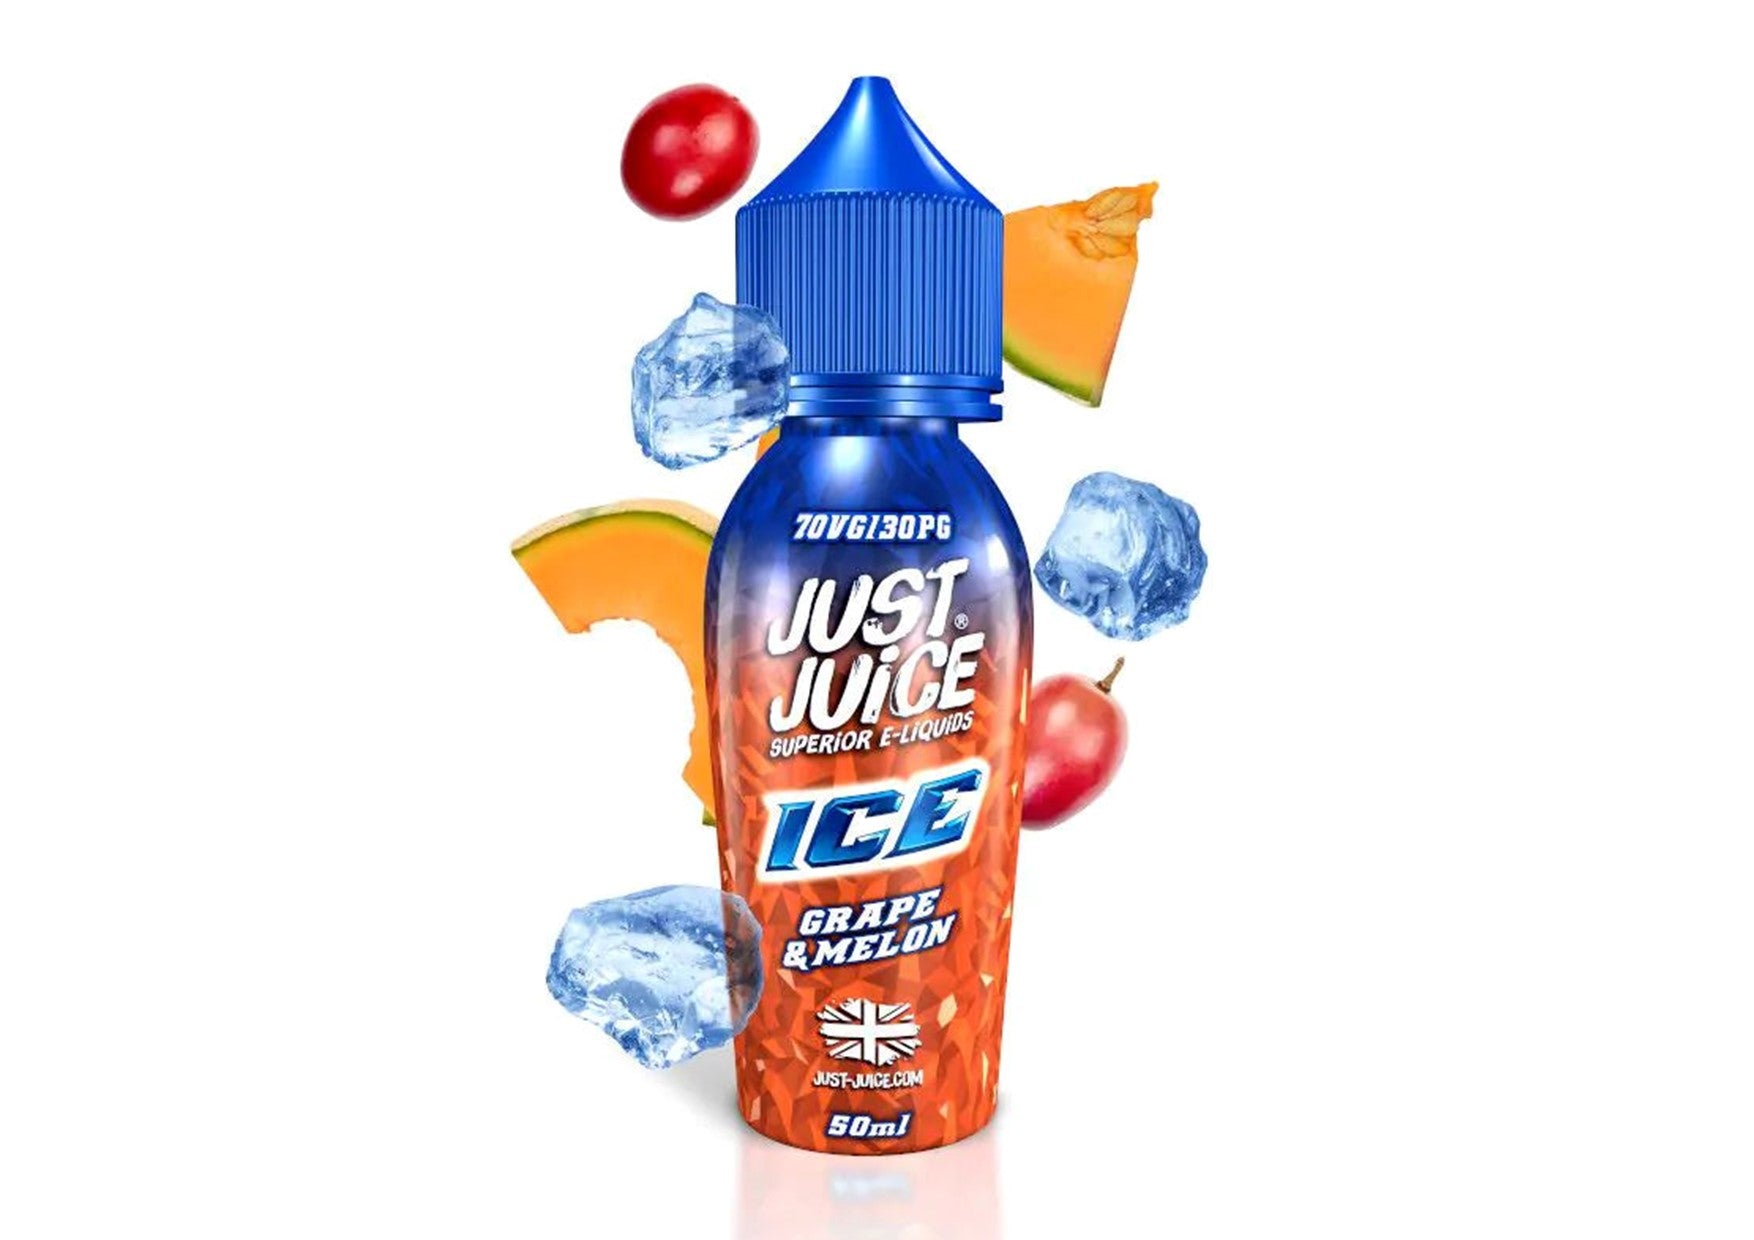 Just Juice | Grape & Melon ICE